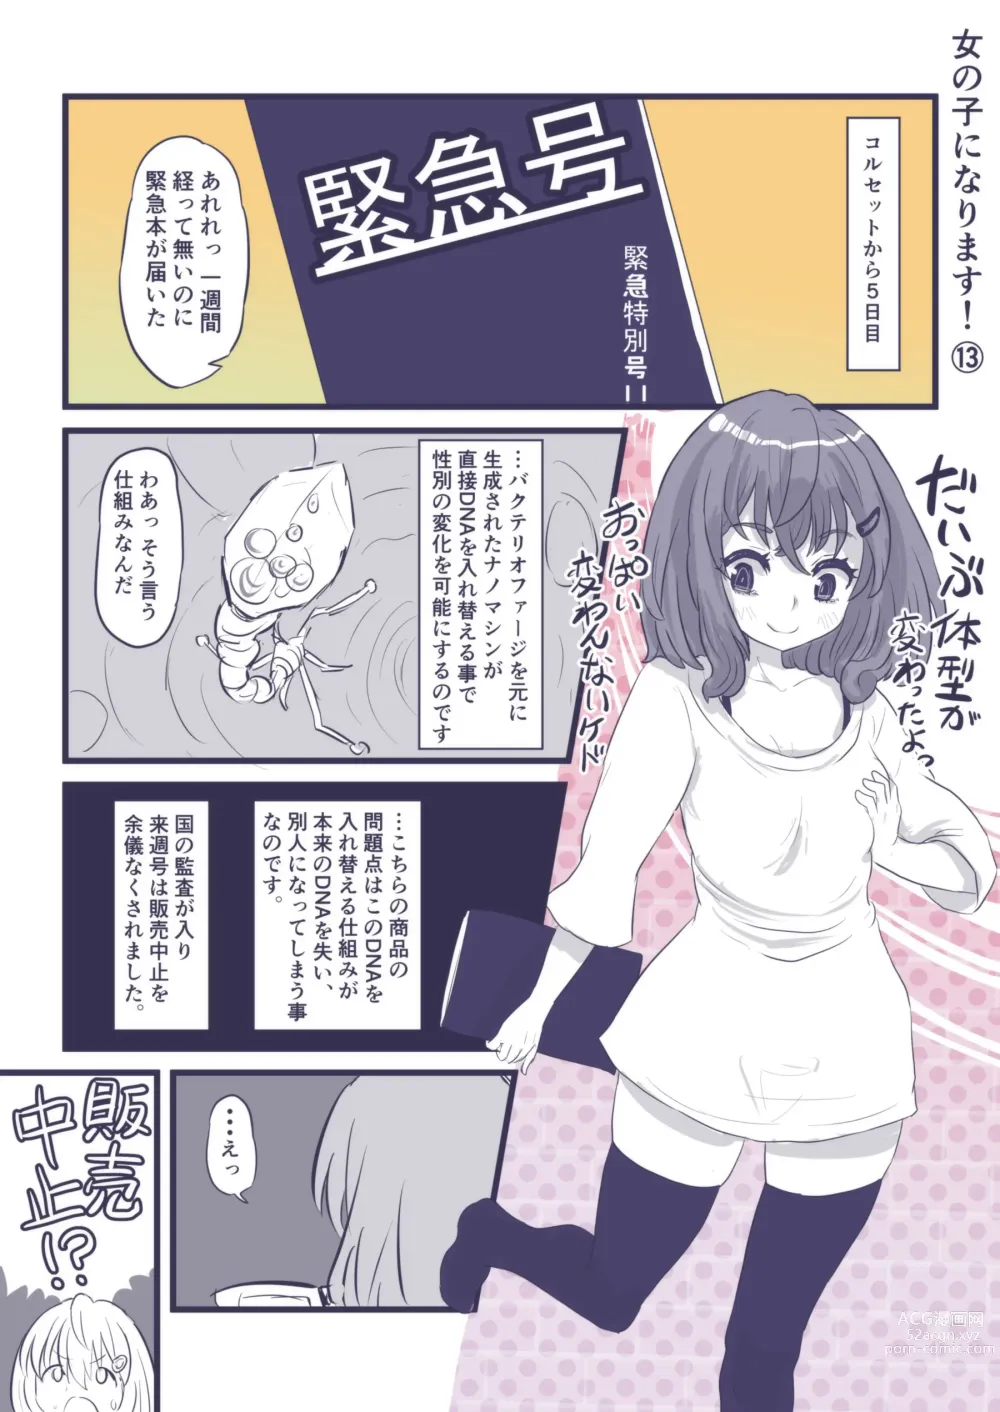 Page 60 of doujinshi Onnanoko ni Narimasu!